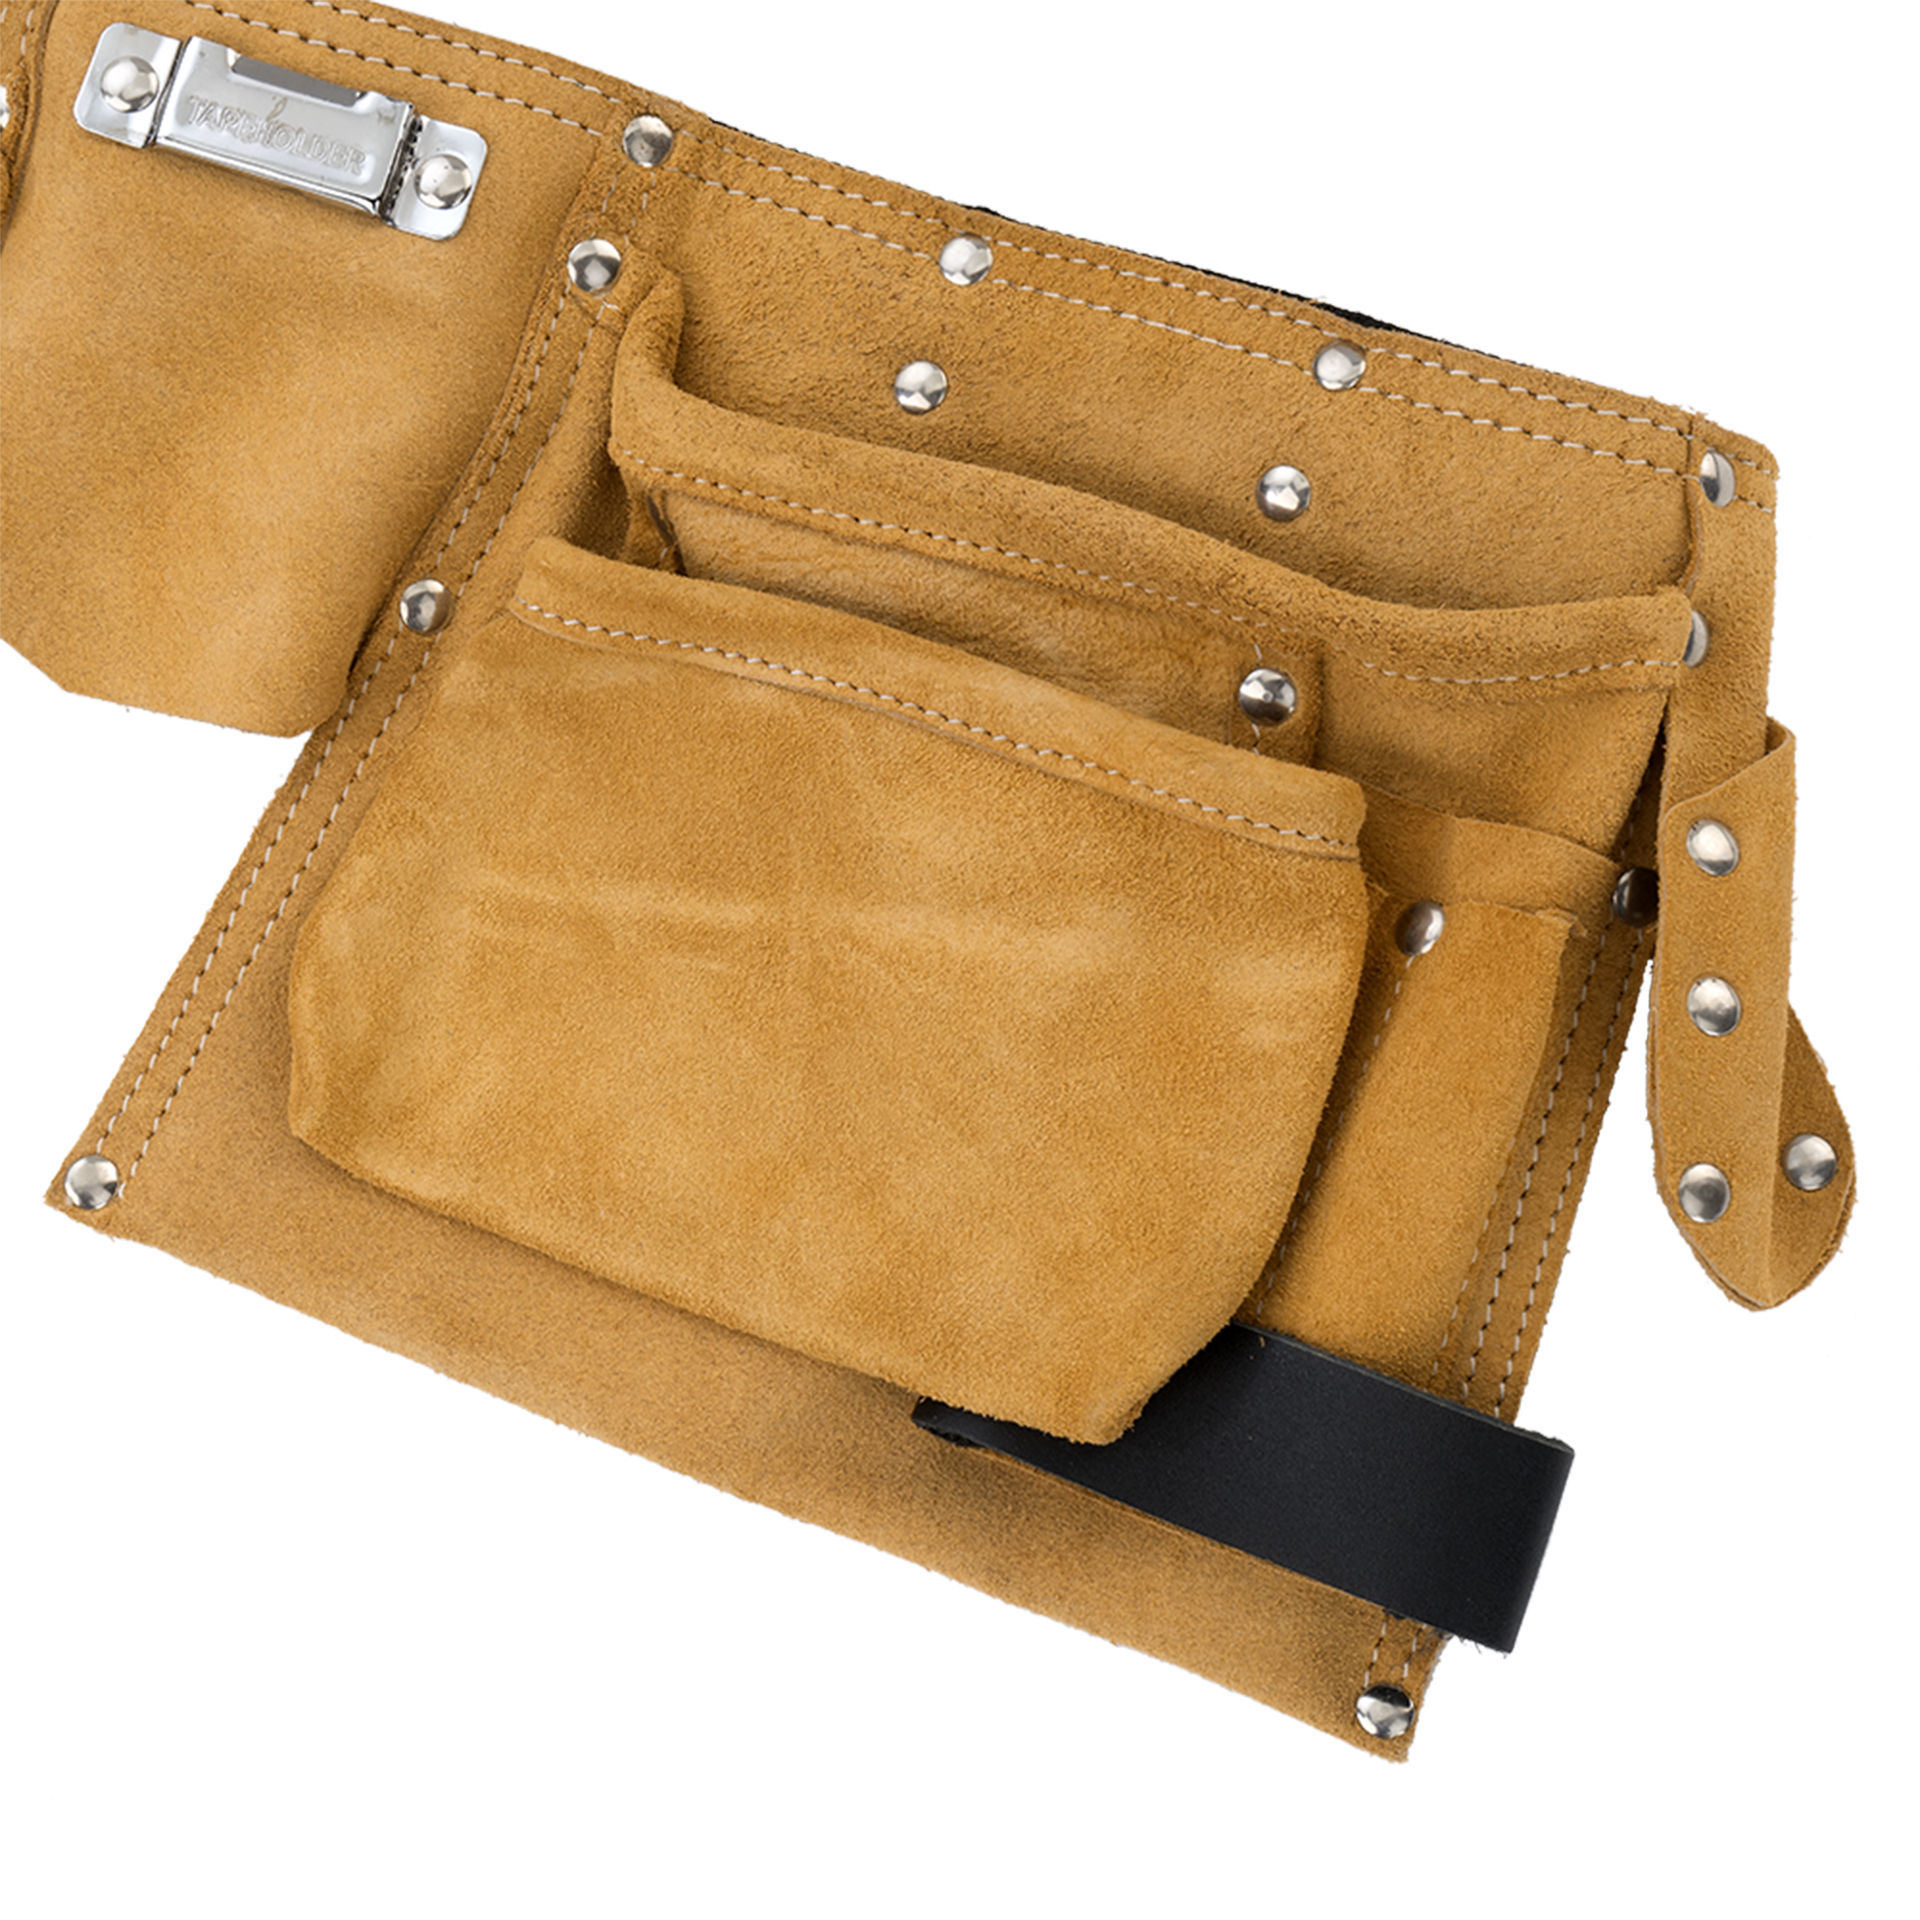 Cinturón portaherramientas con bolsa plana de cuero con cuatro